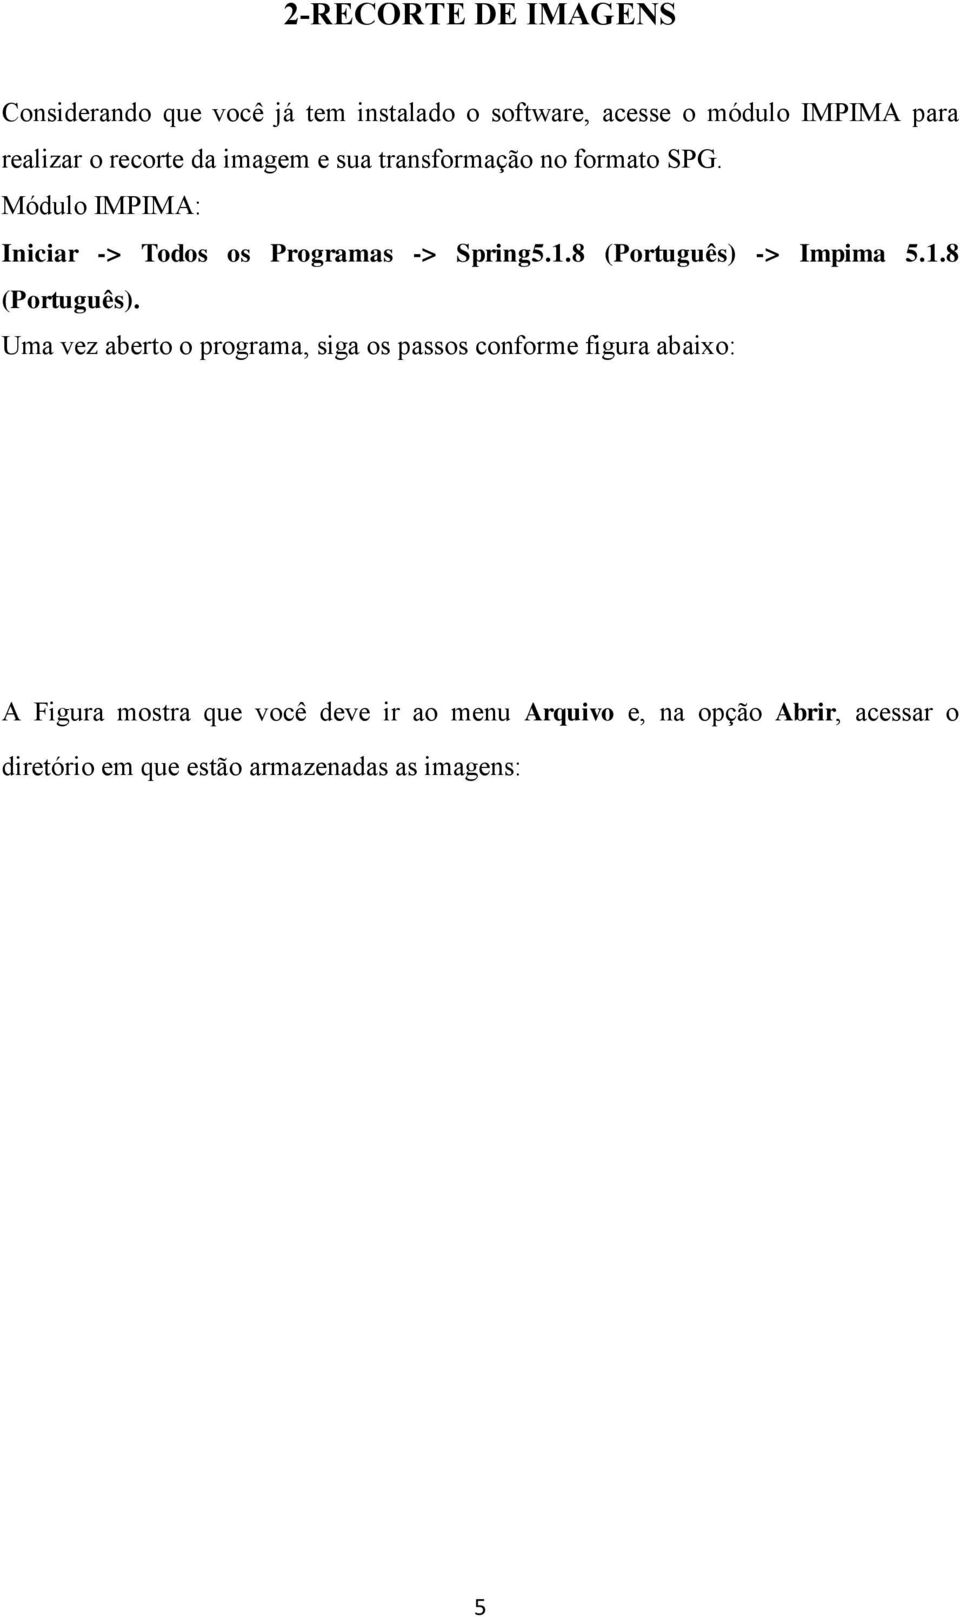 -> Impima 5.1.8 (Português).